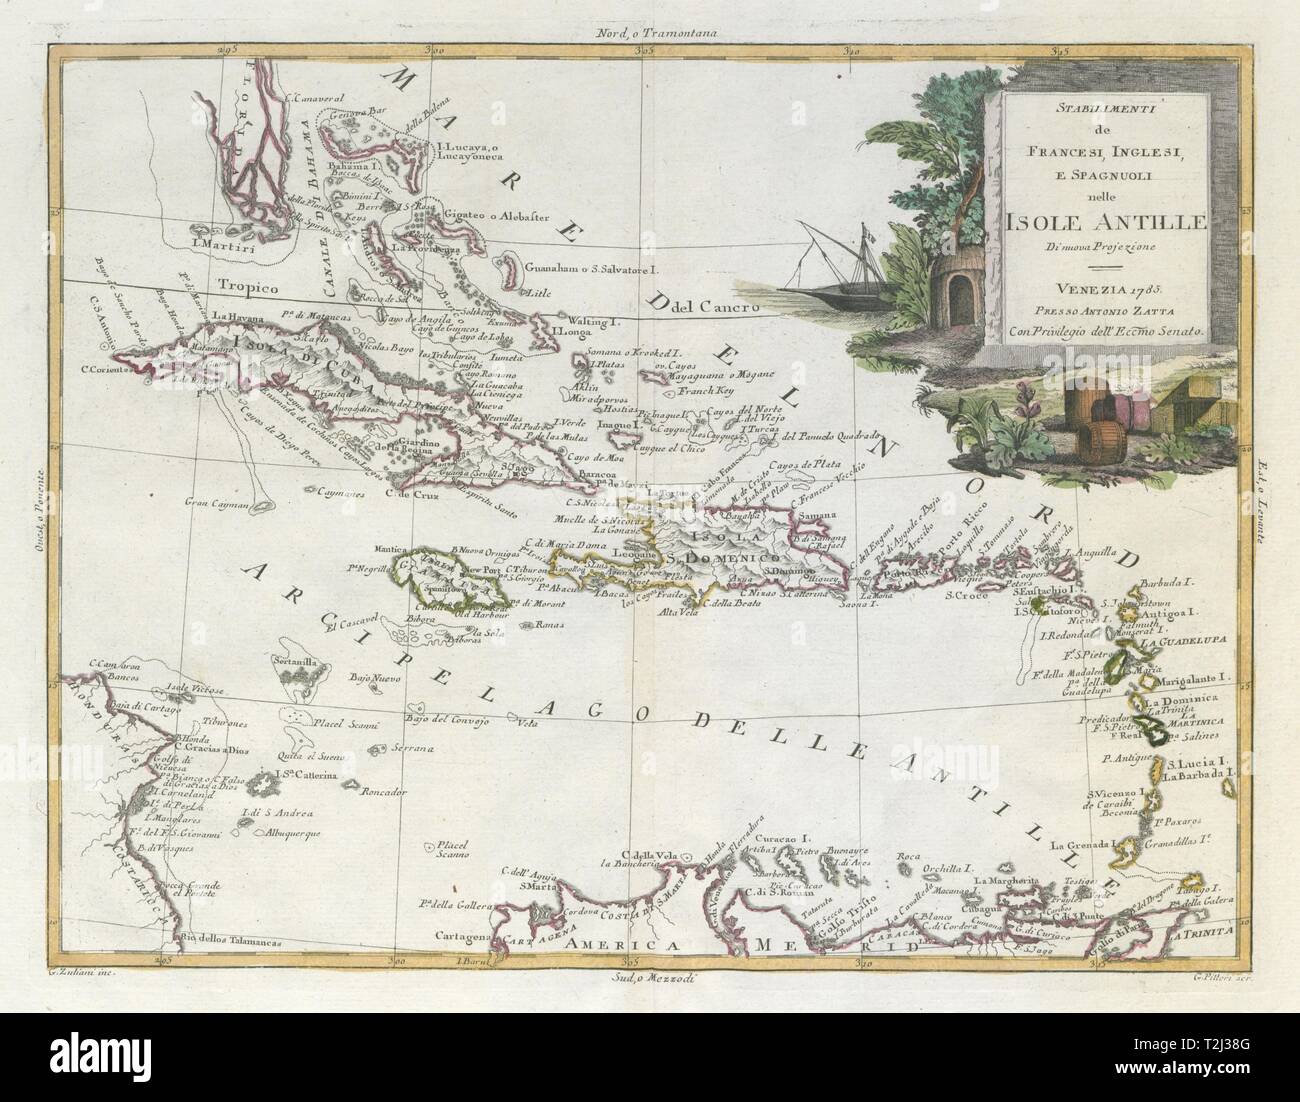 Der tabilimenti de Francesi, Inglesi… isole Antille'. Karibik. ZATTA 1785 Karte Stockfoto